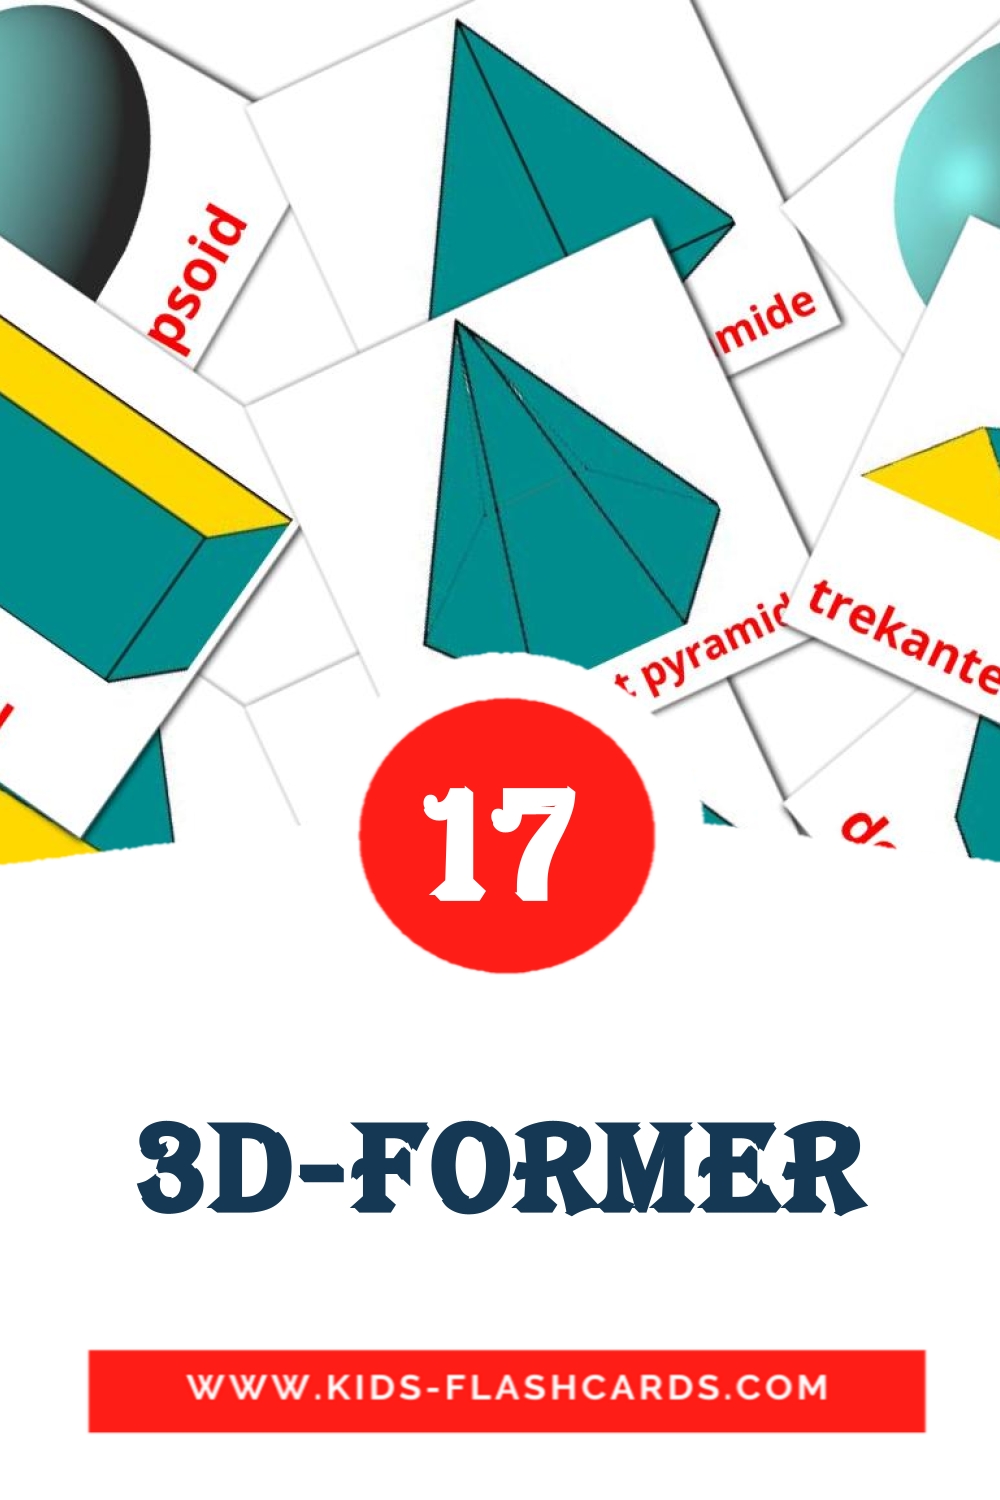 17 cartes illustrées de 3D-former pour la maternelle en norvégien